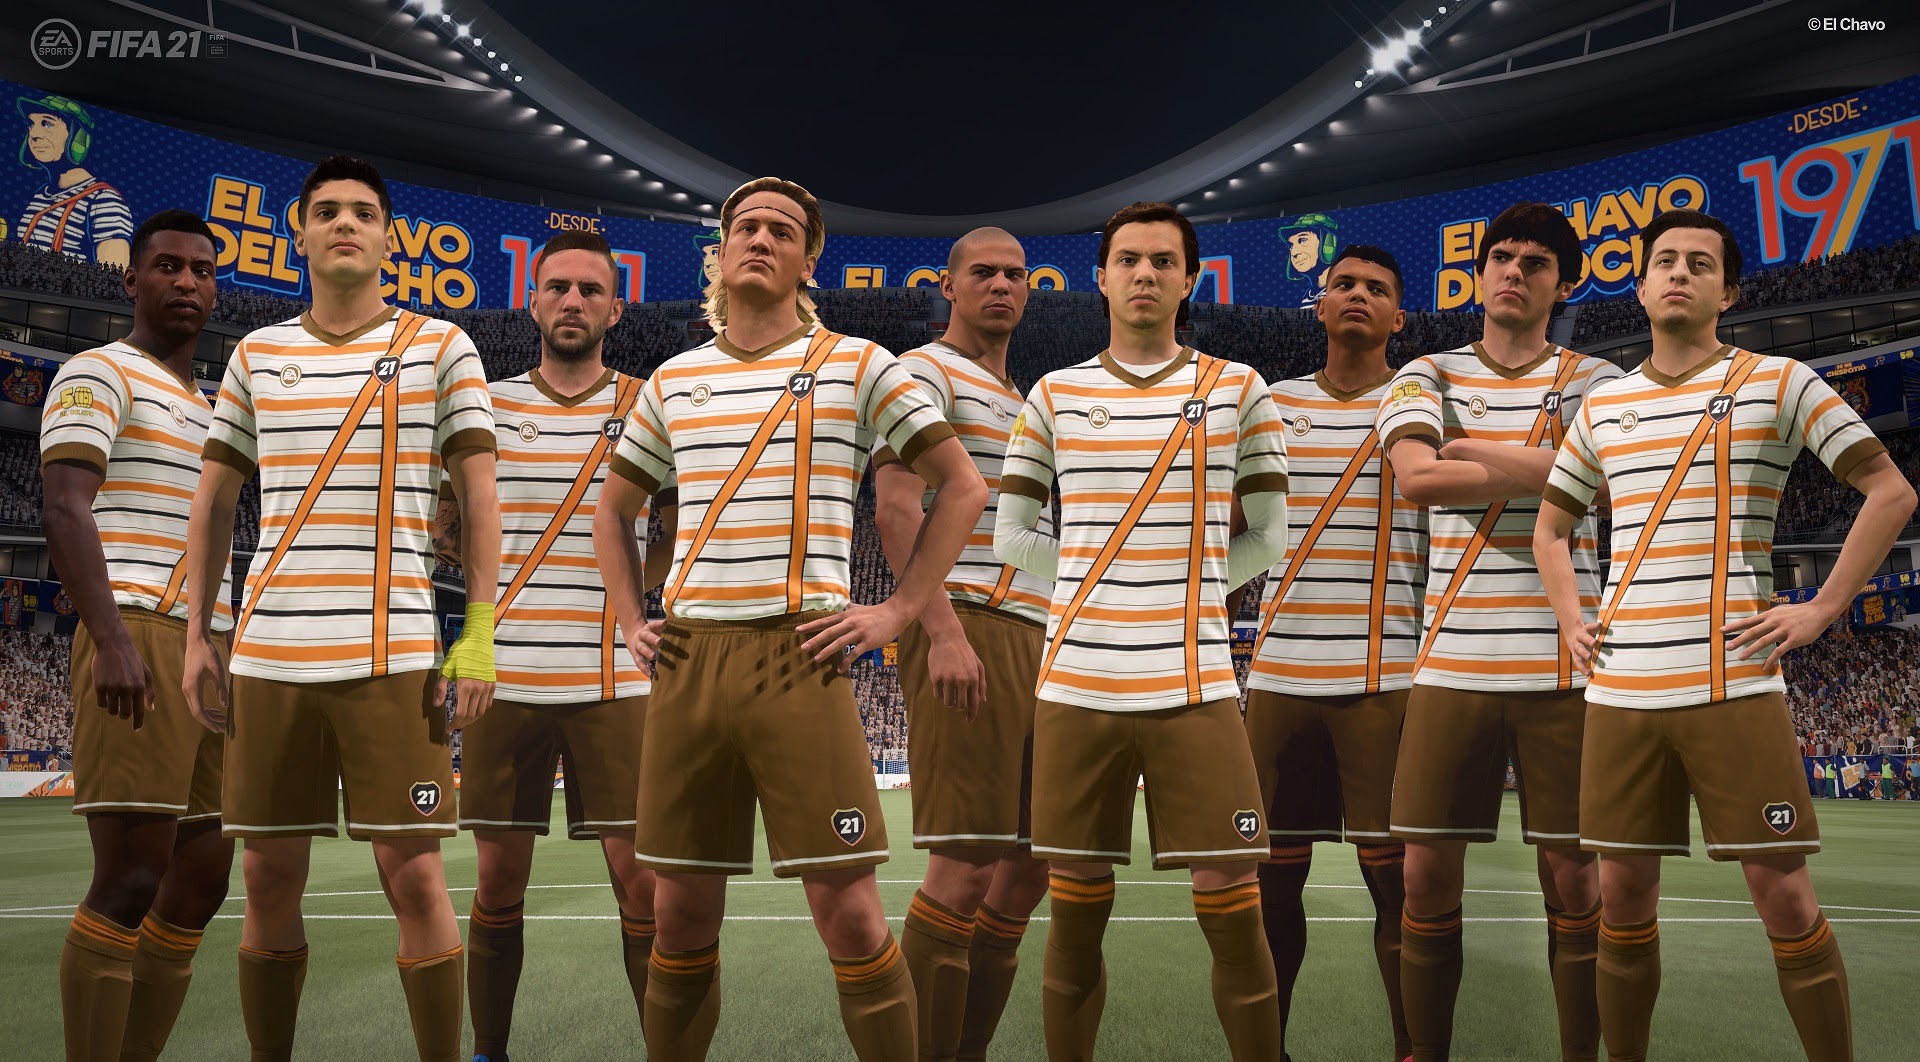 CHAVO DEL 8 FIFA 21